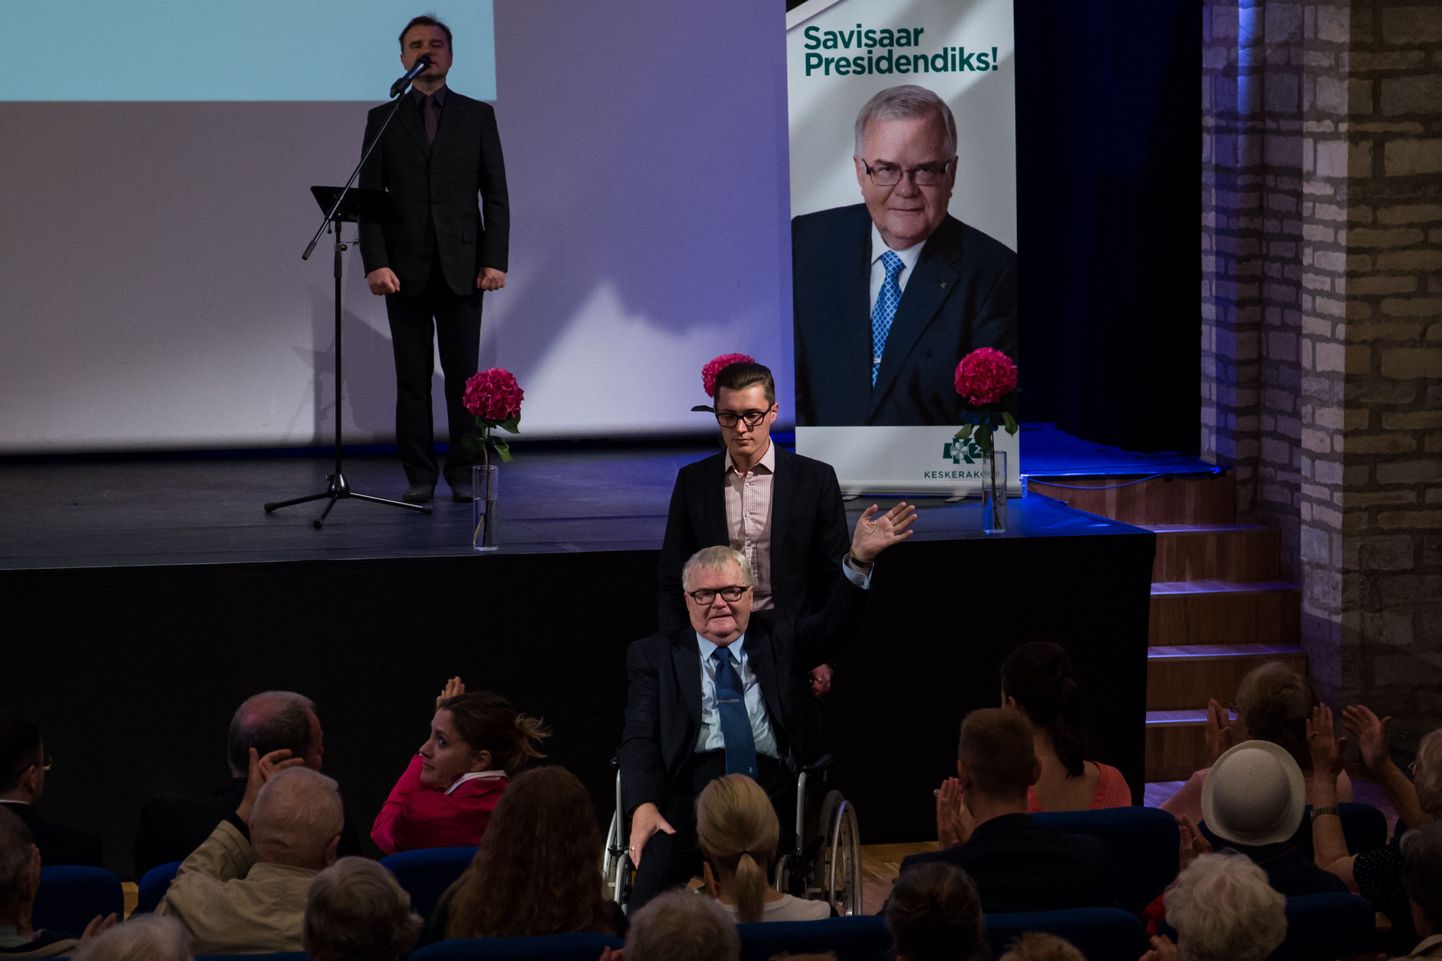 Keskerakonna esimees Edgar Savisaar teatas Tallinnas rahvusraamatukogus peetud kõnes valmisolekust kandideerida presidendiks.